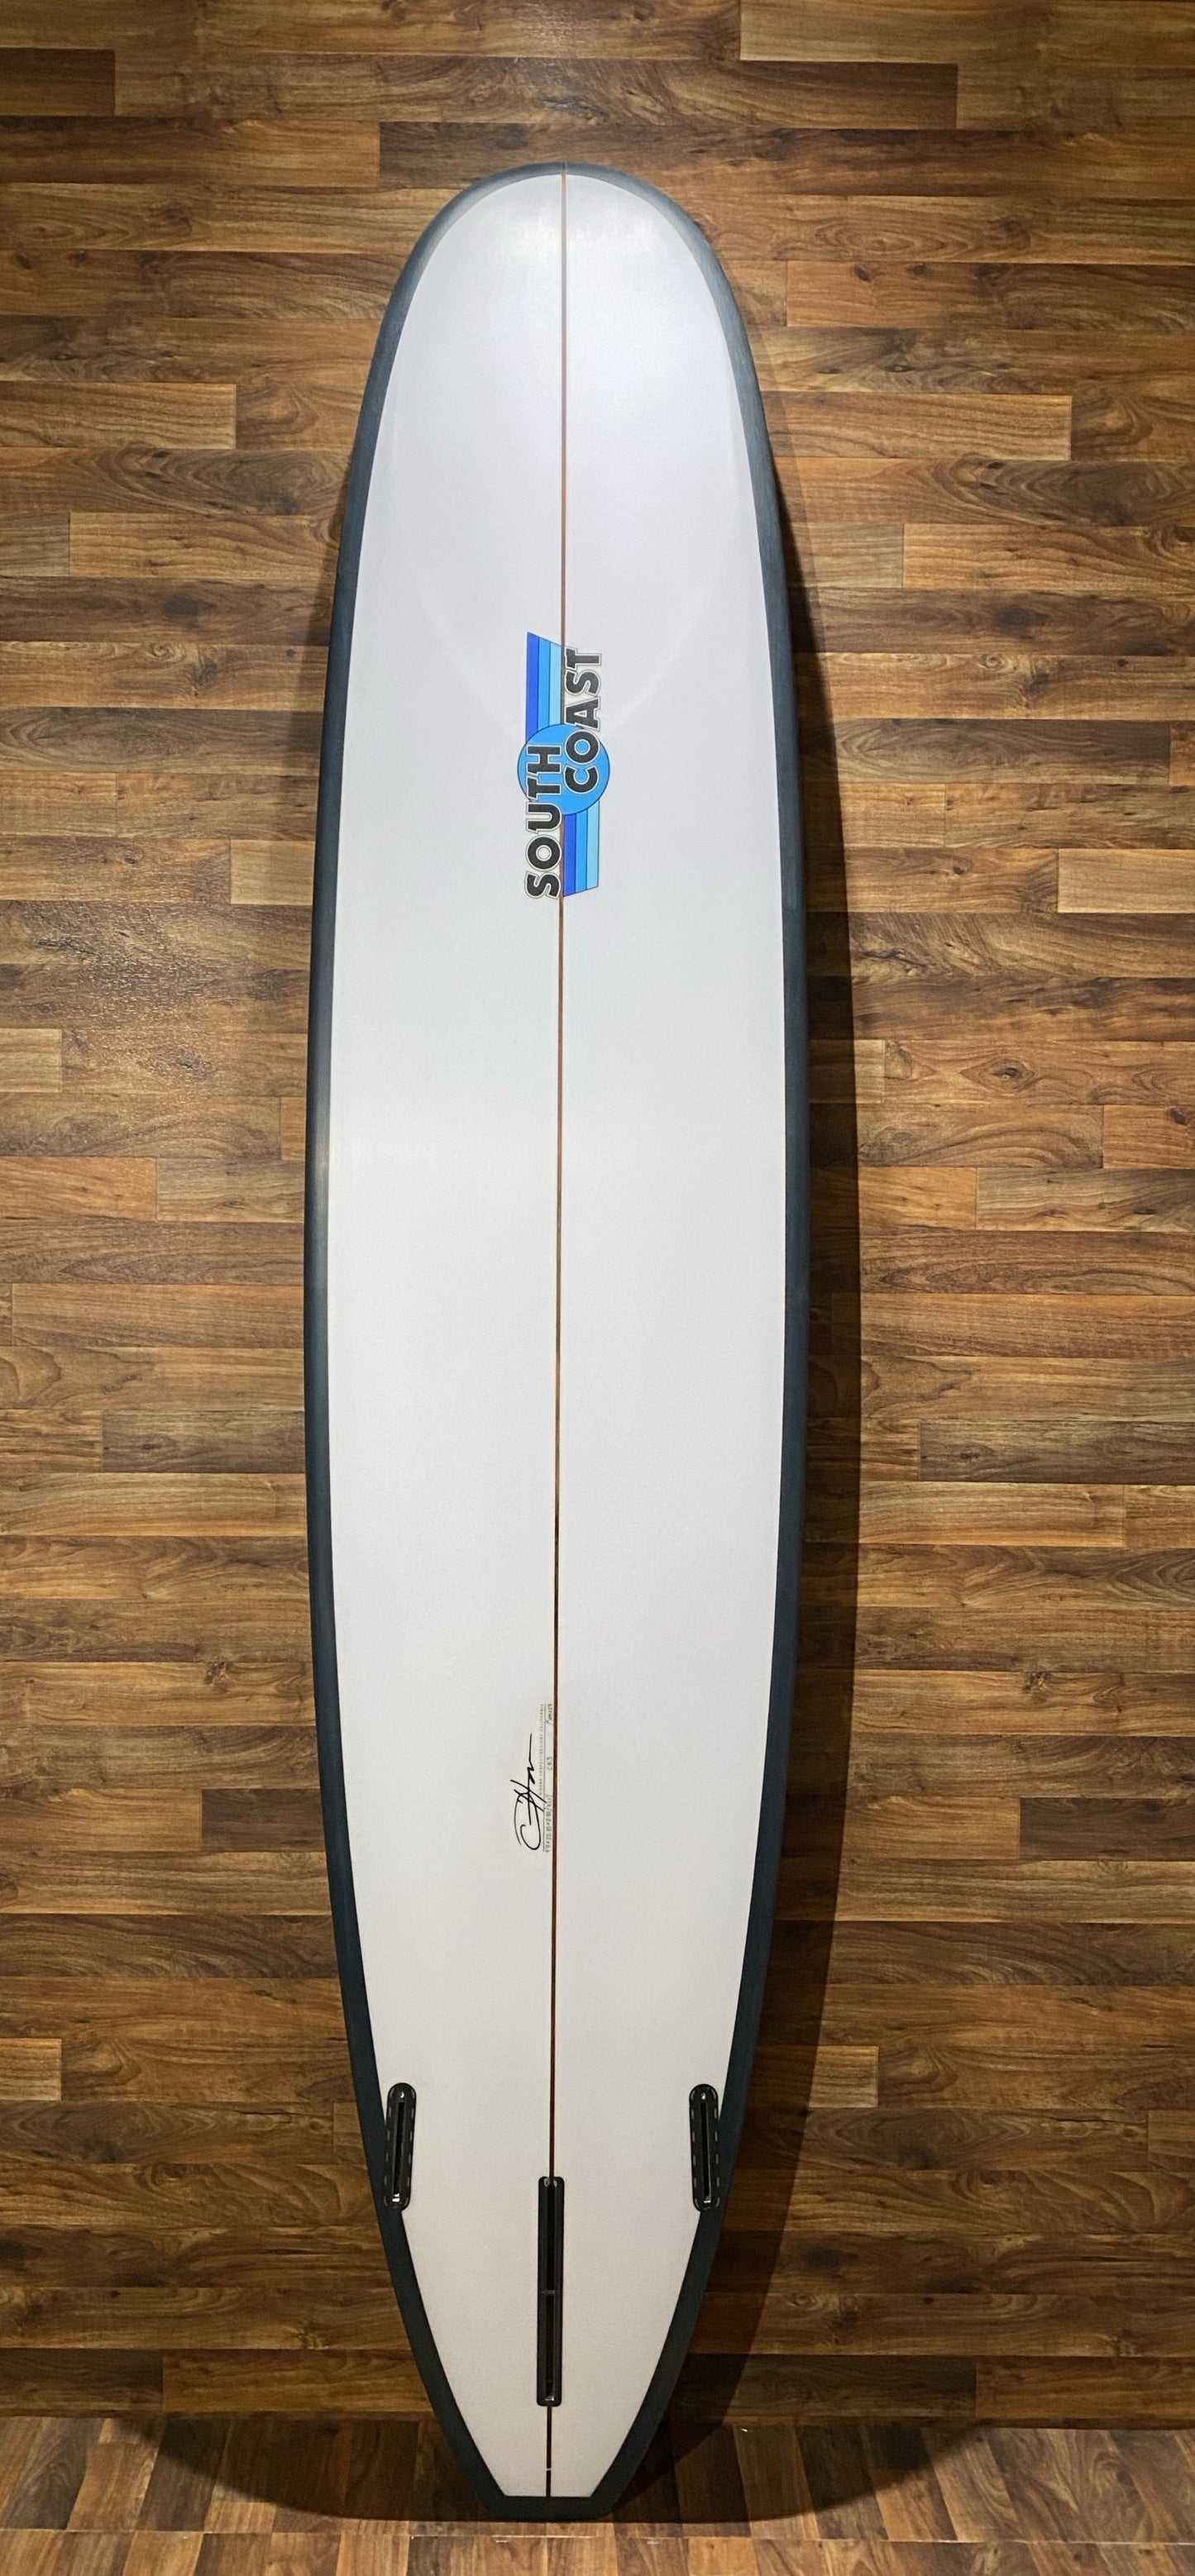 SOUTH COAST CR3 SURFBOARD 9'0”